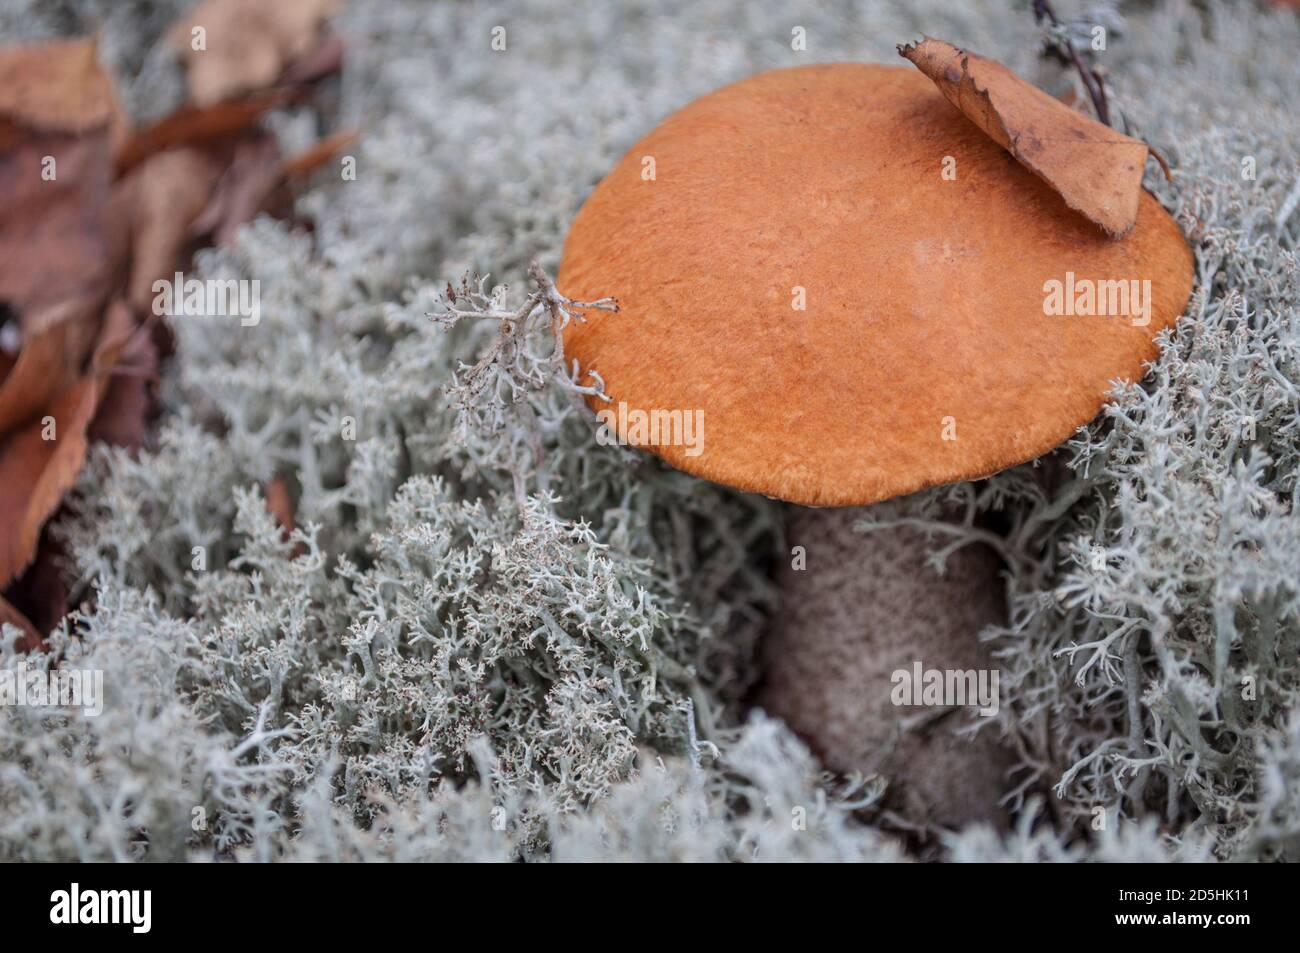 champignon de bouleau avec capuchon orange sur mousse grise Banque D'Images